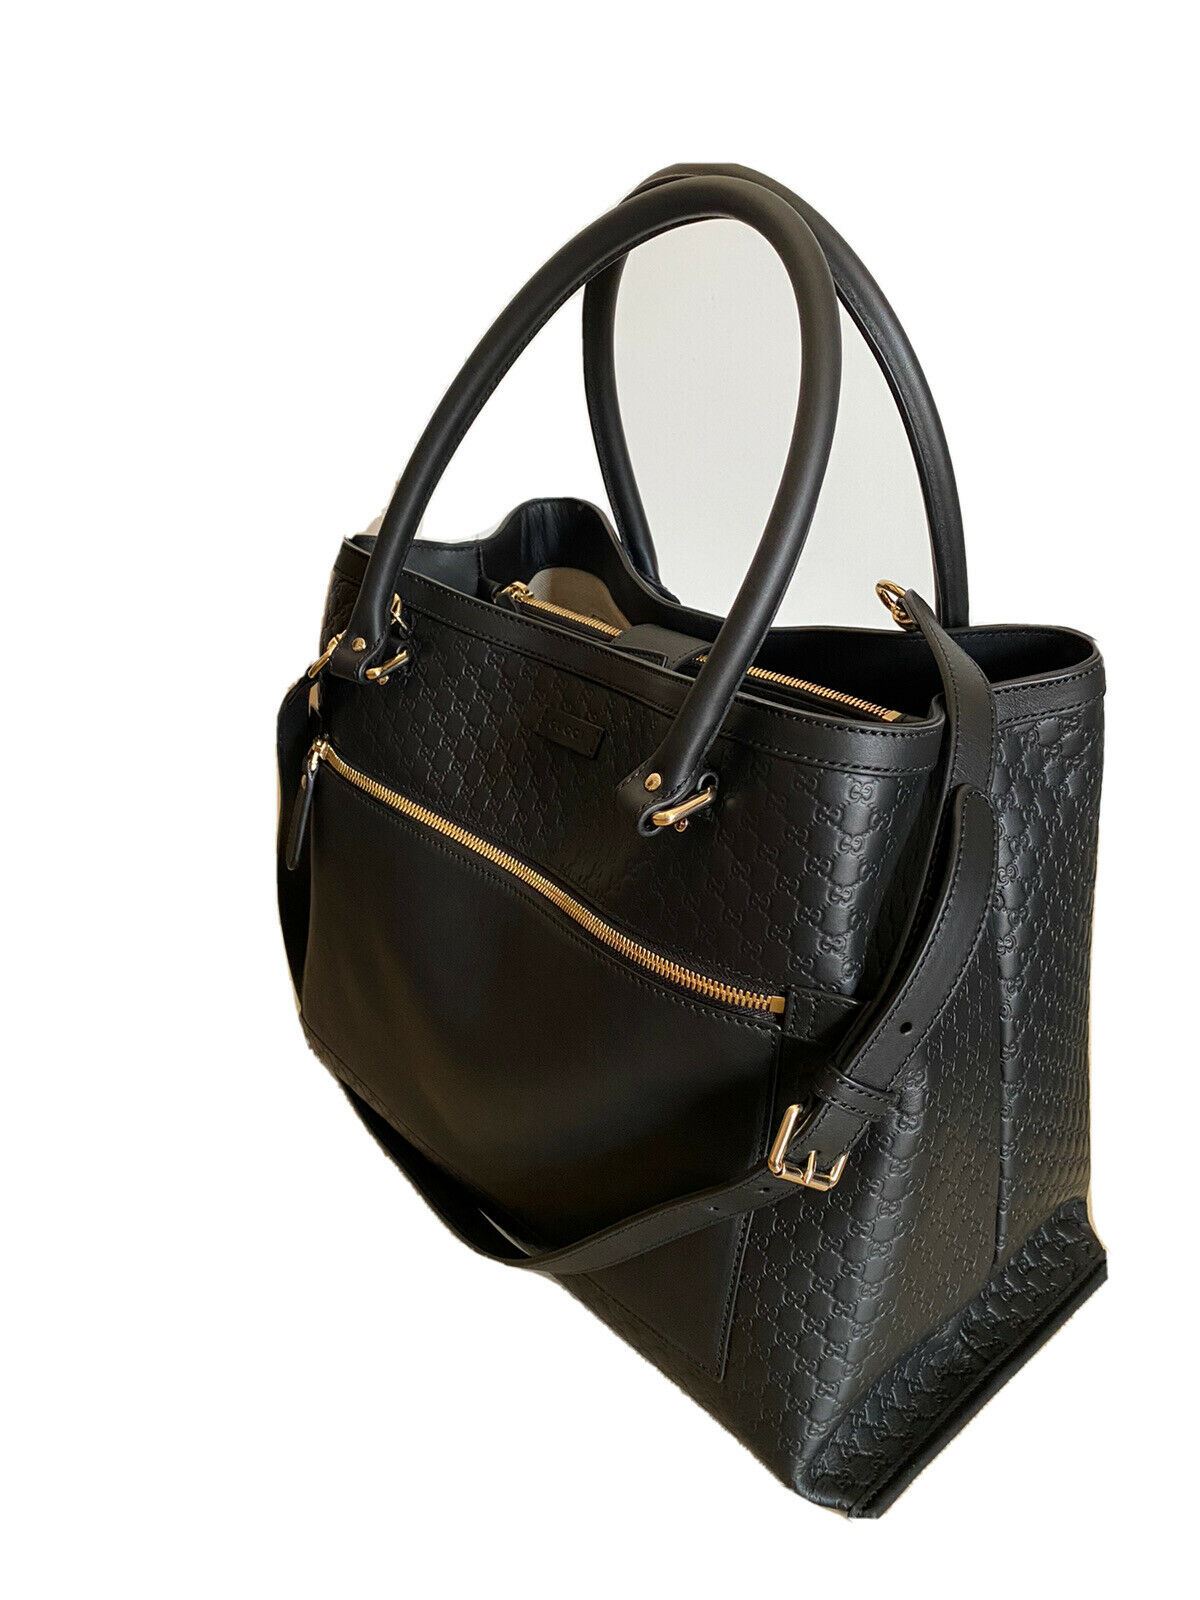 New $3895 Gucci Large 510290 GG Logo Leather Shoulder Bag Handbag Black